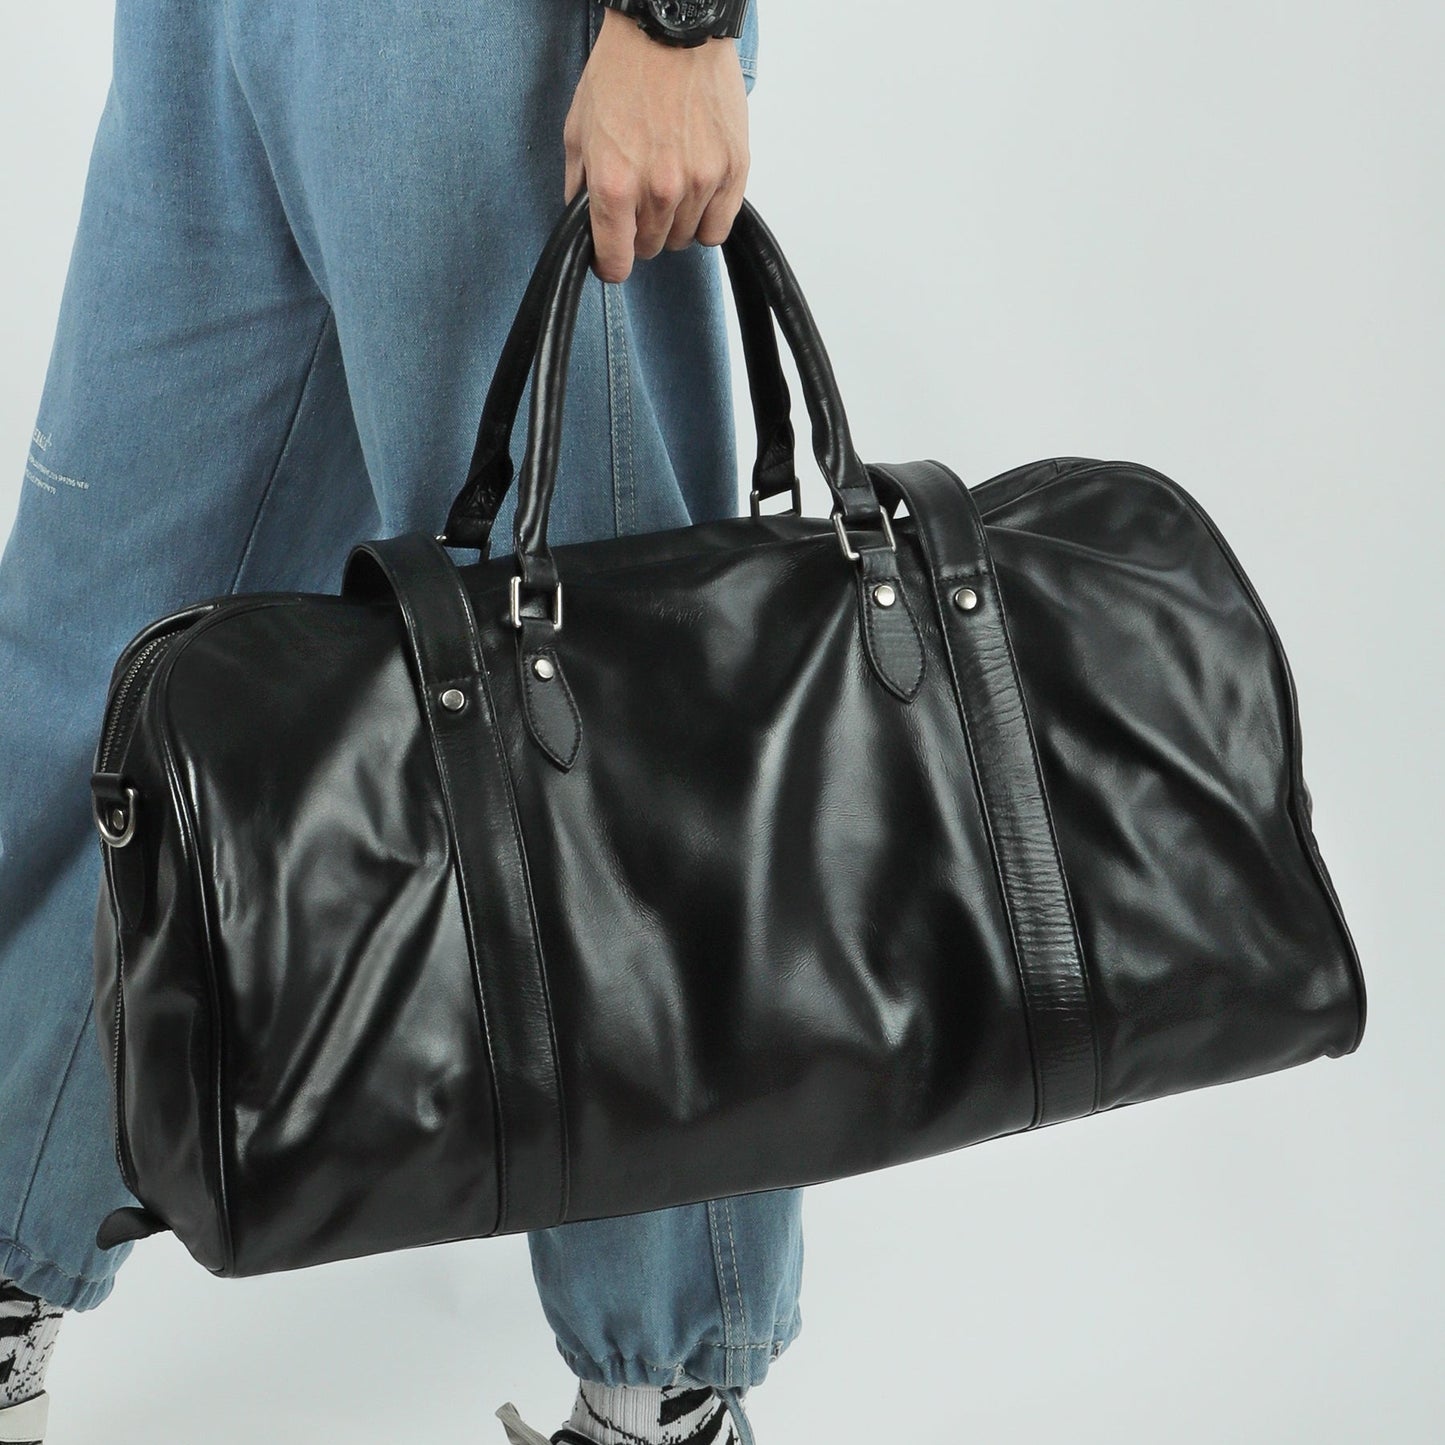 Genuine Leather Retro Style Travel Luggage for Men Woyaza